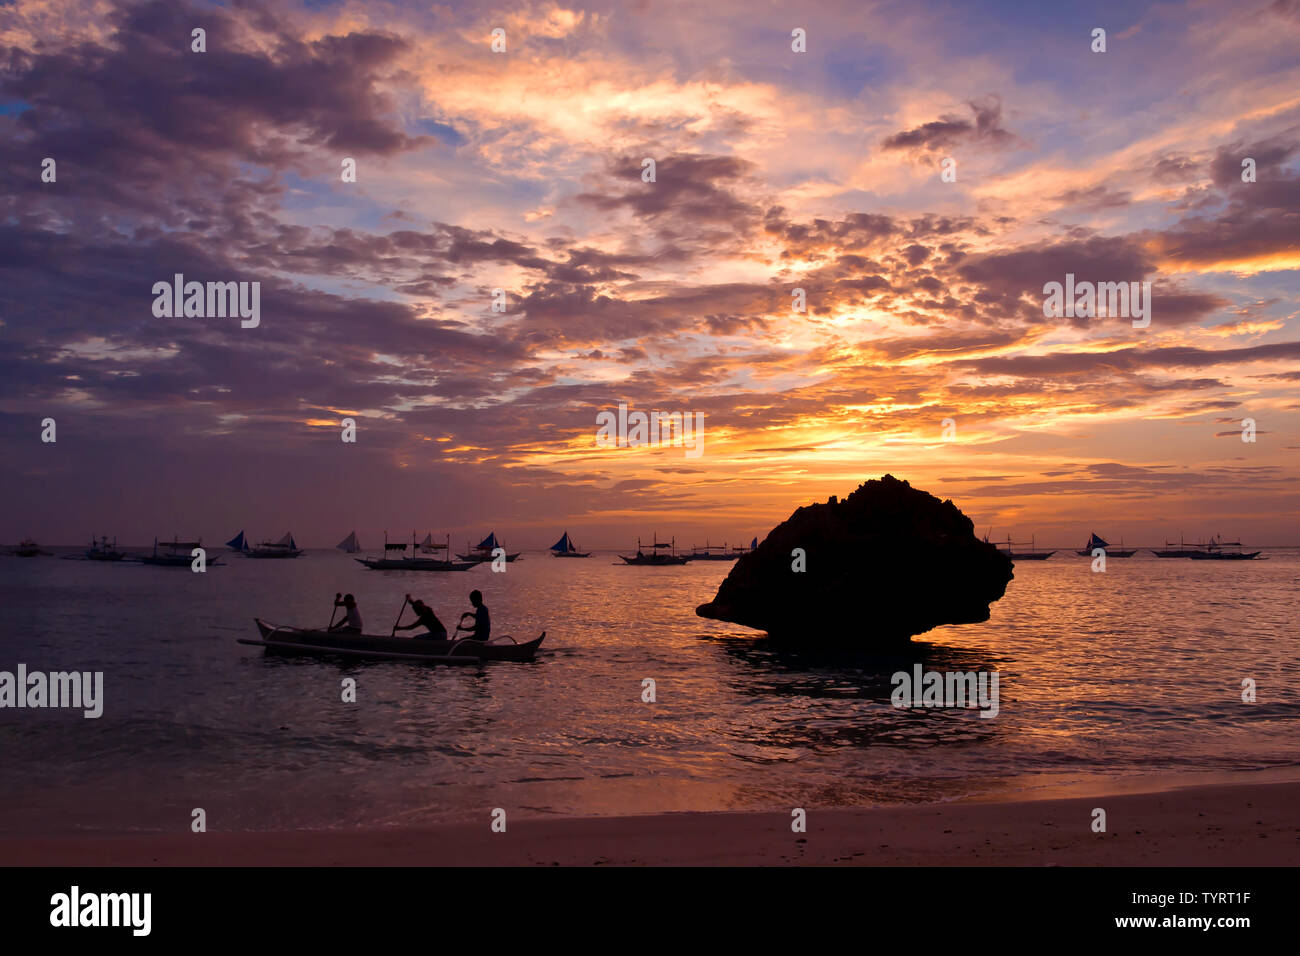 Trois hommes l'aviron d'un bateau de pêche au coucher du soleil près de white beach, Boracay Island, Philippines Banque D'Images